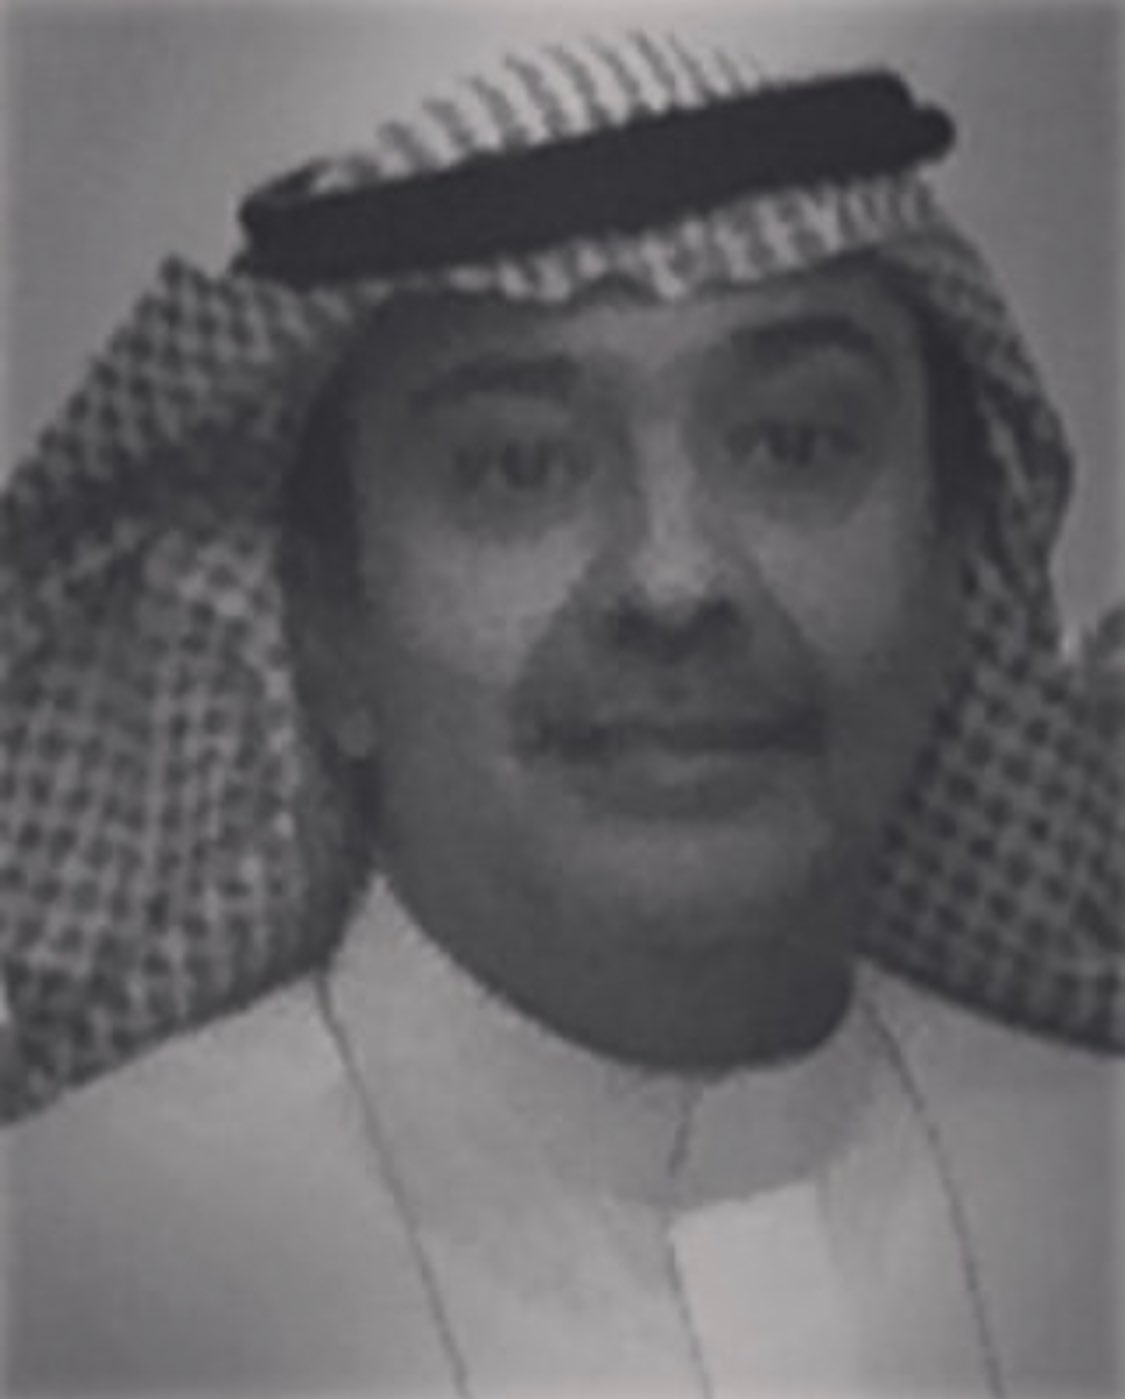 بيان عاجل من الديوان الملكي السعودي بشأن وفاة أحد أمراء آل سعود صورة صحافة 24 نت